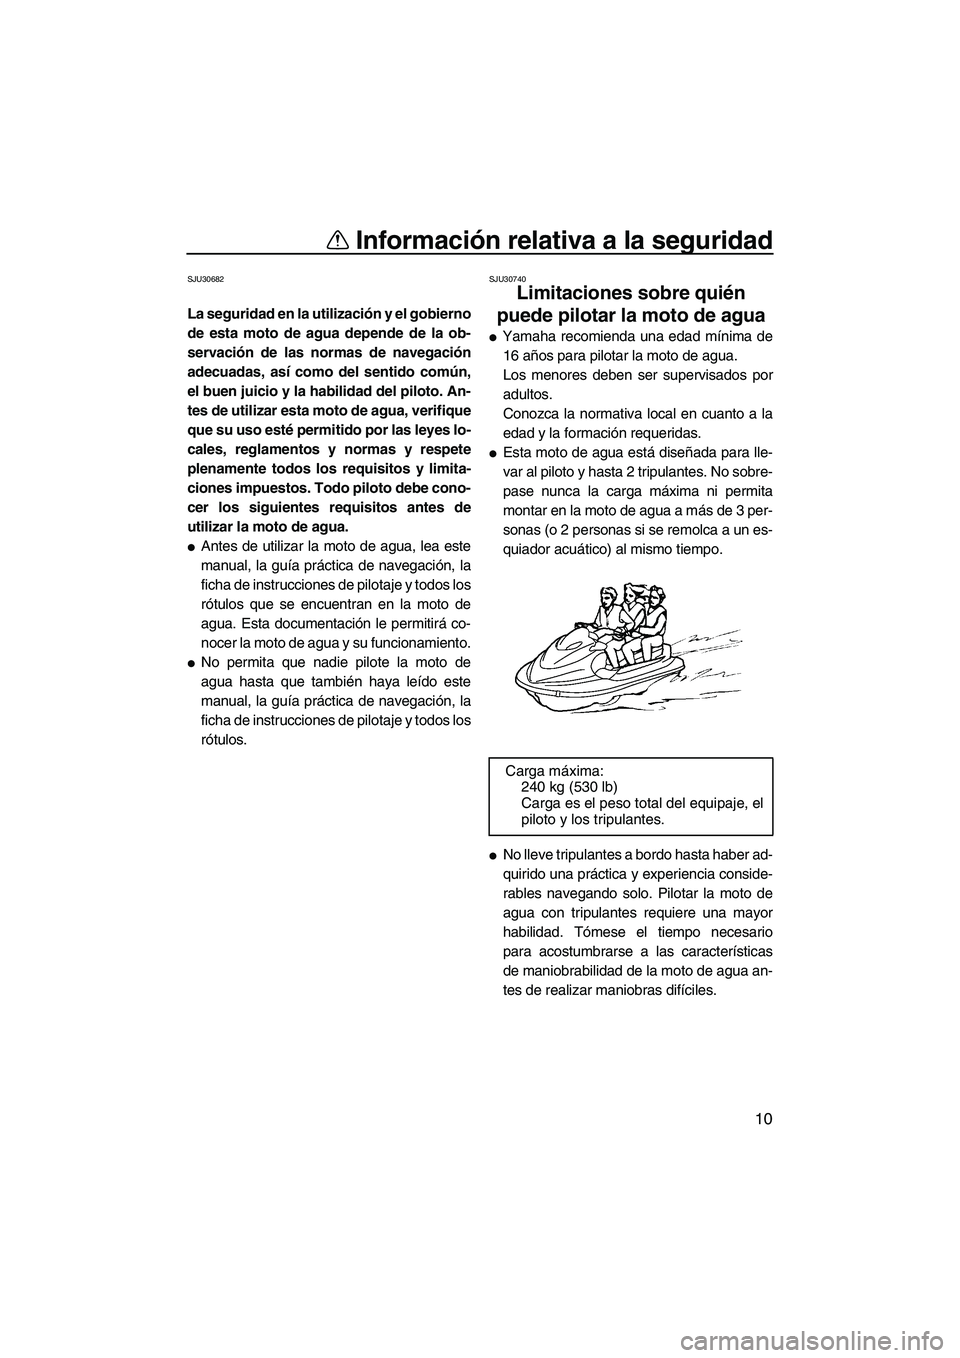 YAMAHA FX HO CRUISER 2009  Manuale de Empleo (in Spanish) Información relativa a la seguridad
10
SJU30682
La seguridad en la utilización y el gobierno
de esta moto de agua depende de la ob-
servación de las normas de navegación
adecuadas, así como del s